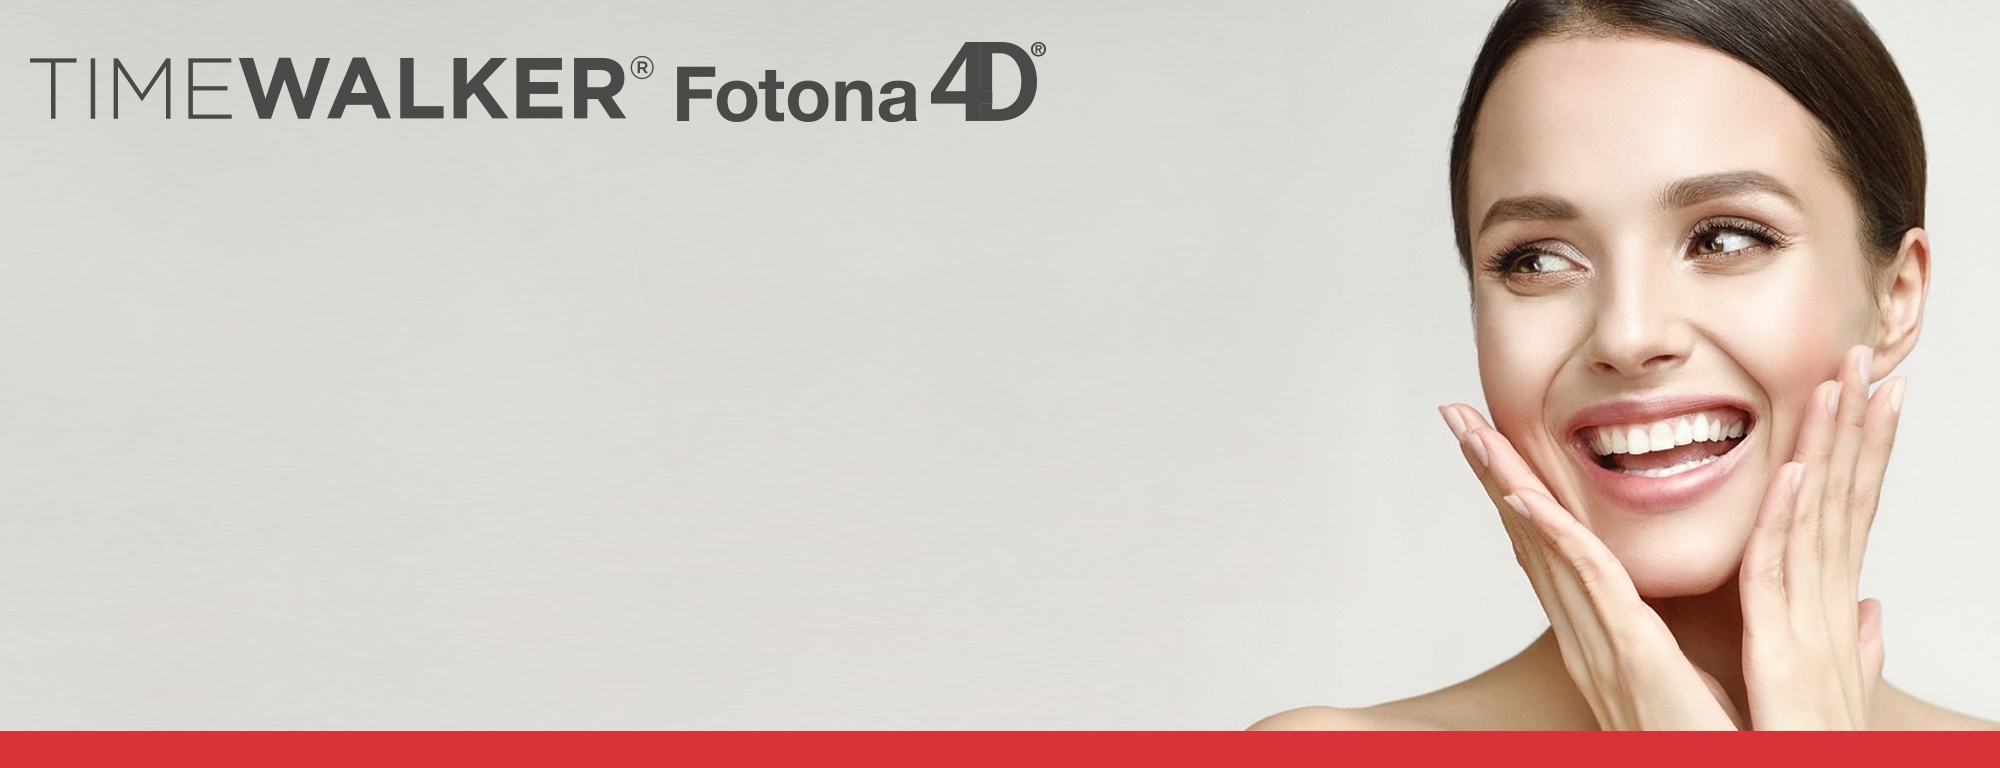 フォトナで自己治癒力を活かした4つのアプローチ Fotona4D